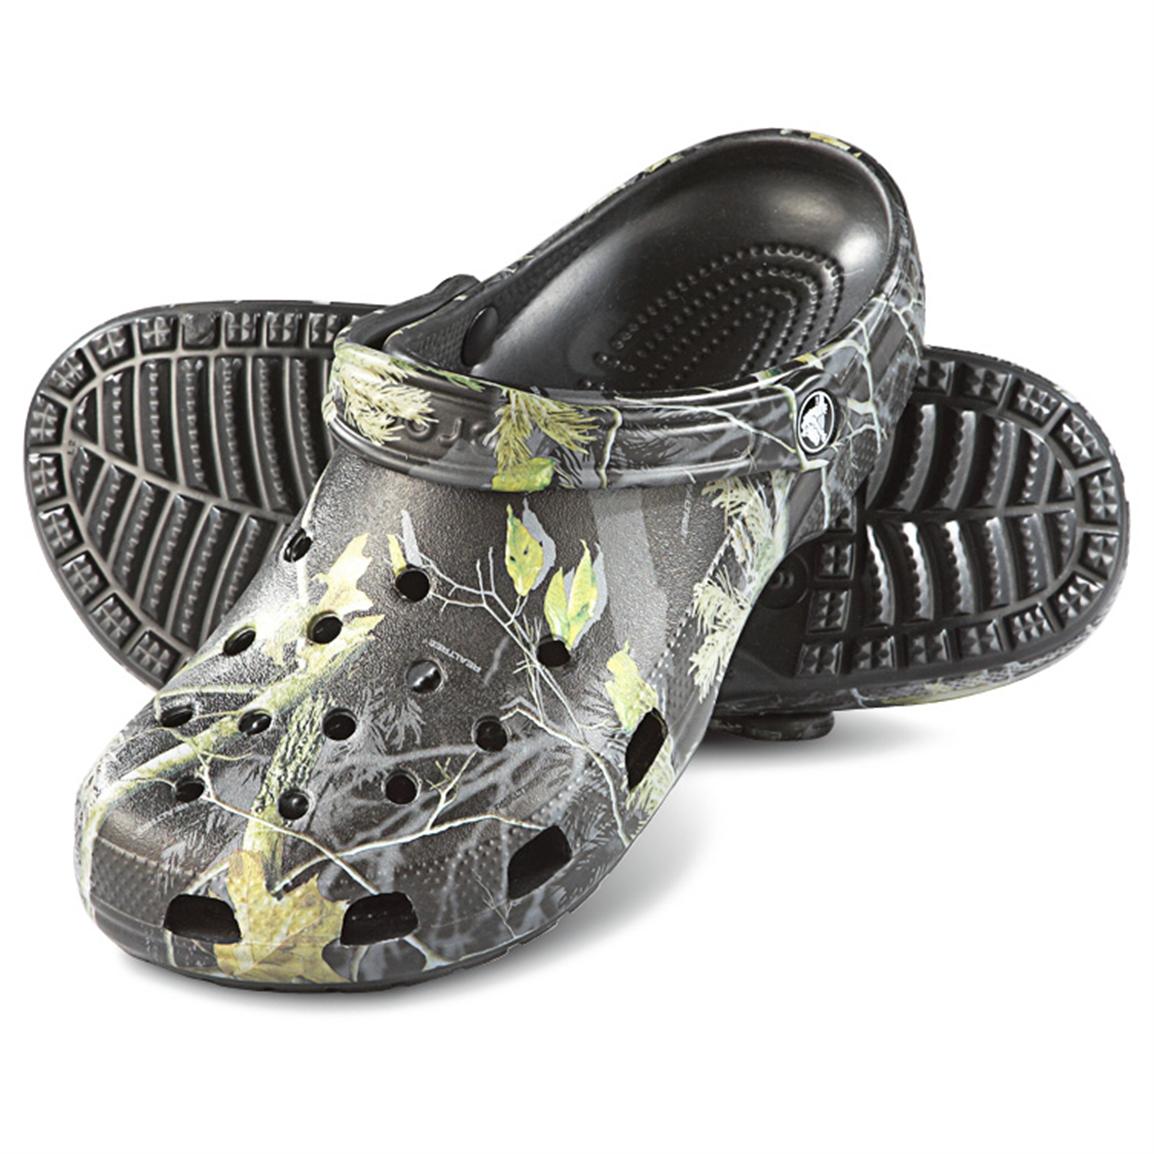 Men's Crocs Classic Clogs, Realtree Ap Black - 582178, Casual Shoes ECA